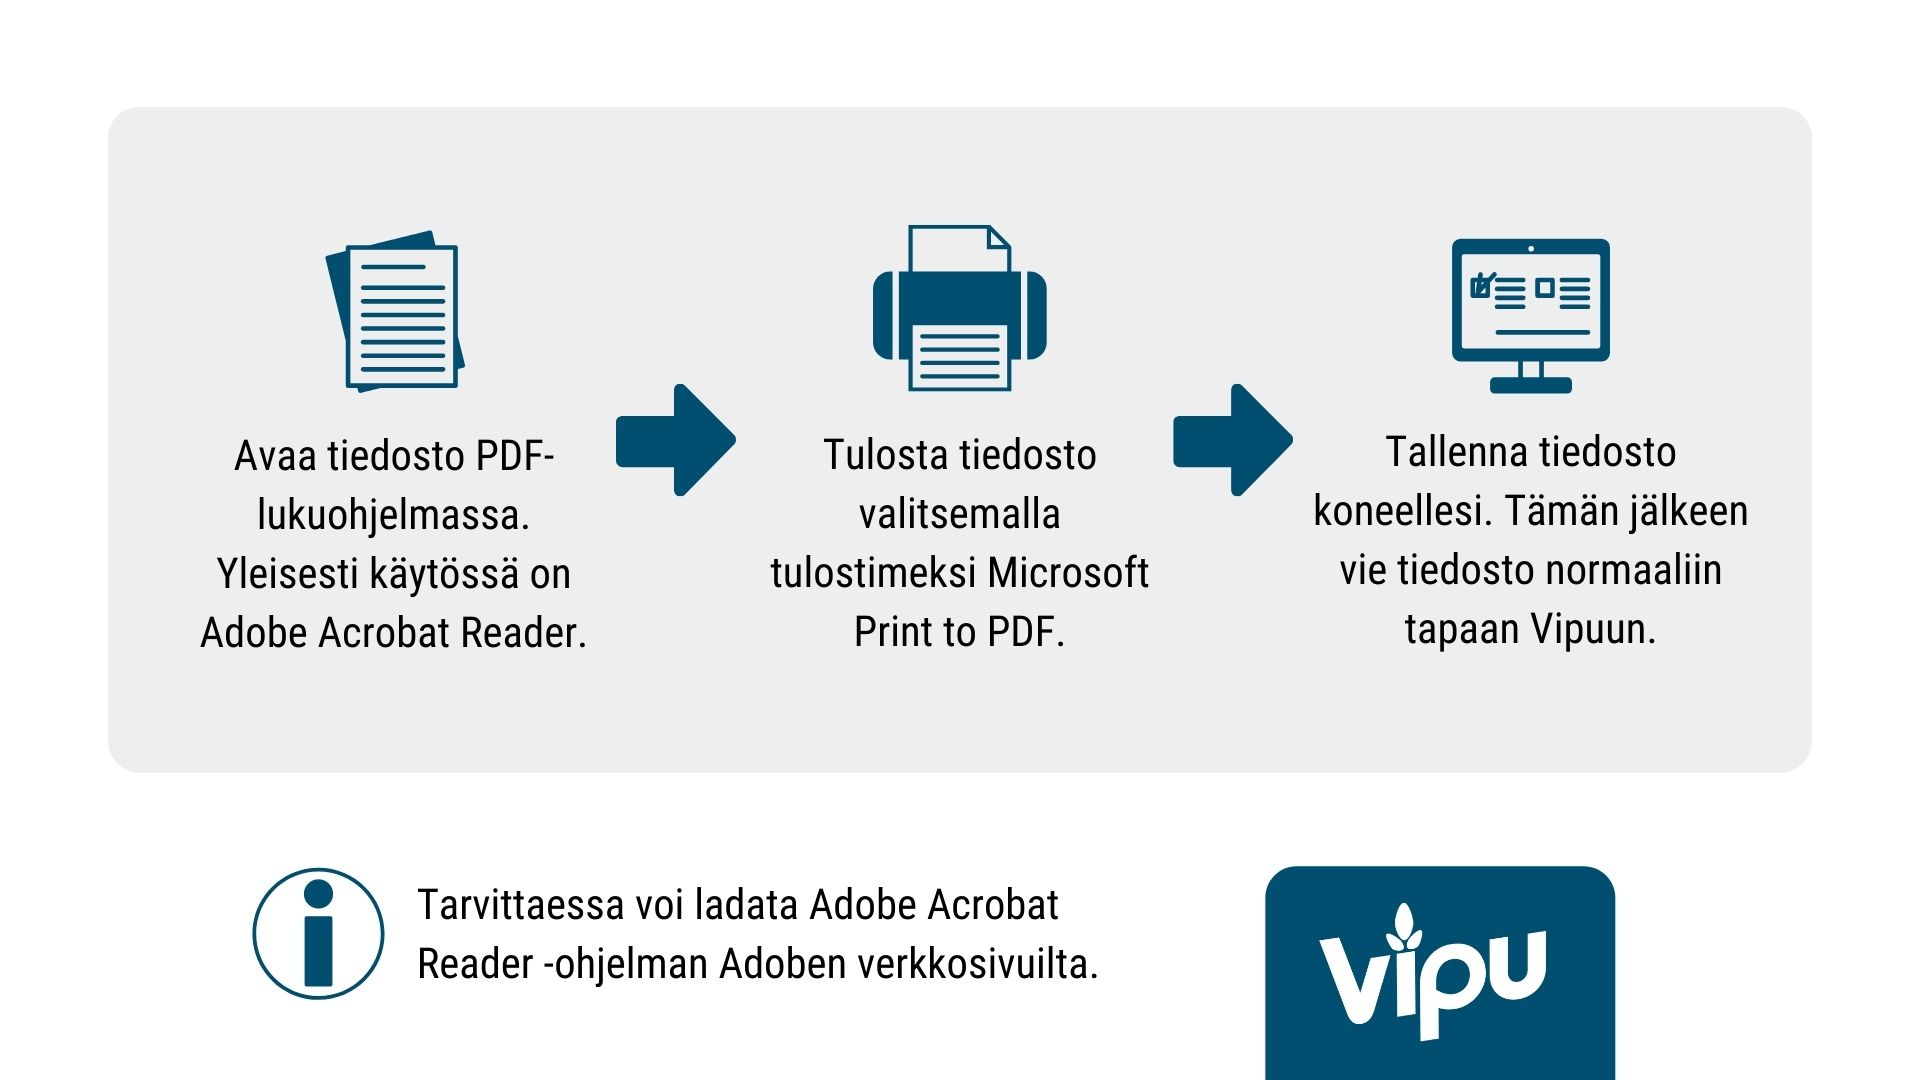 Kuvassa teksti: Avaa tiedosto PDF-lukuohjelmassa. Yleisesti käytössä on Adobe Acrobat Reader. Tarvittaessa voit ladata Adobe Acrobat Reader -ohjelman Adoben verkkosivuilta. Tulosta tiedosto valitsemalla tulostimeksi Microsoft Print to PDF. Tallenna tiedosto koneellesi. Tämän jälkeen vie tiedosto normaaliin tapaan Vipuun.